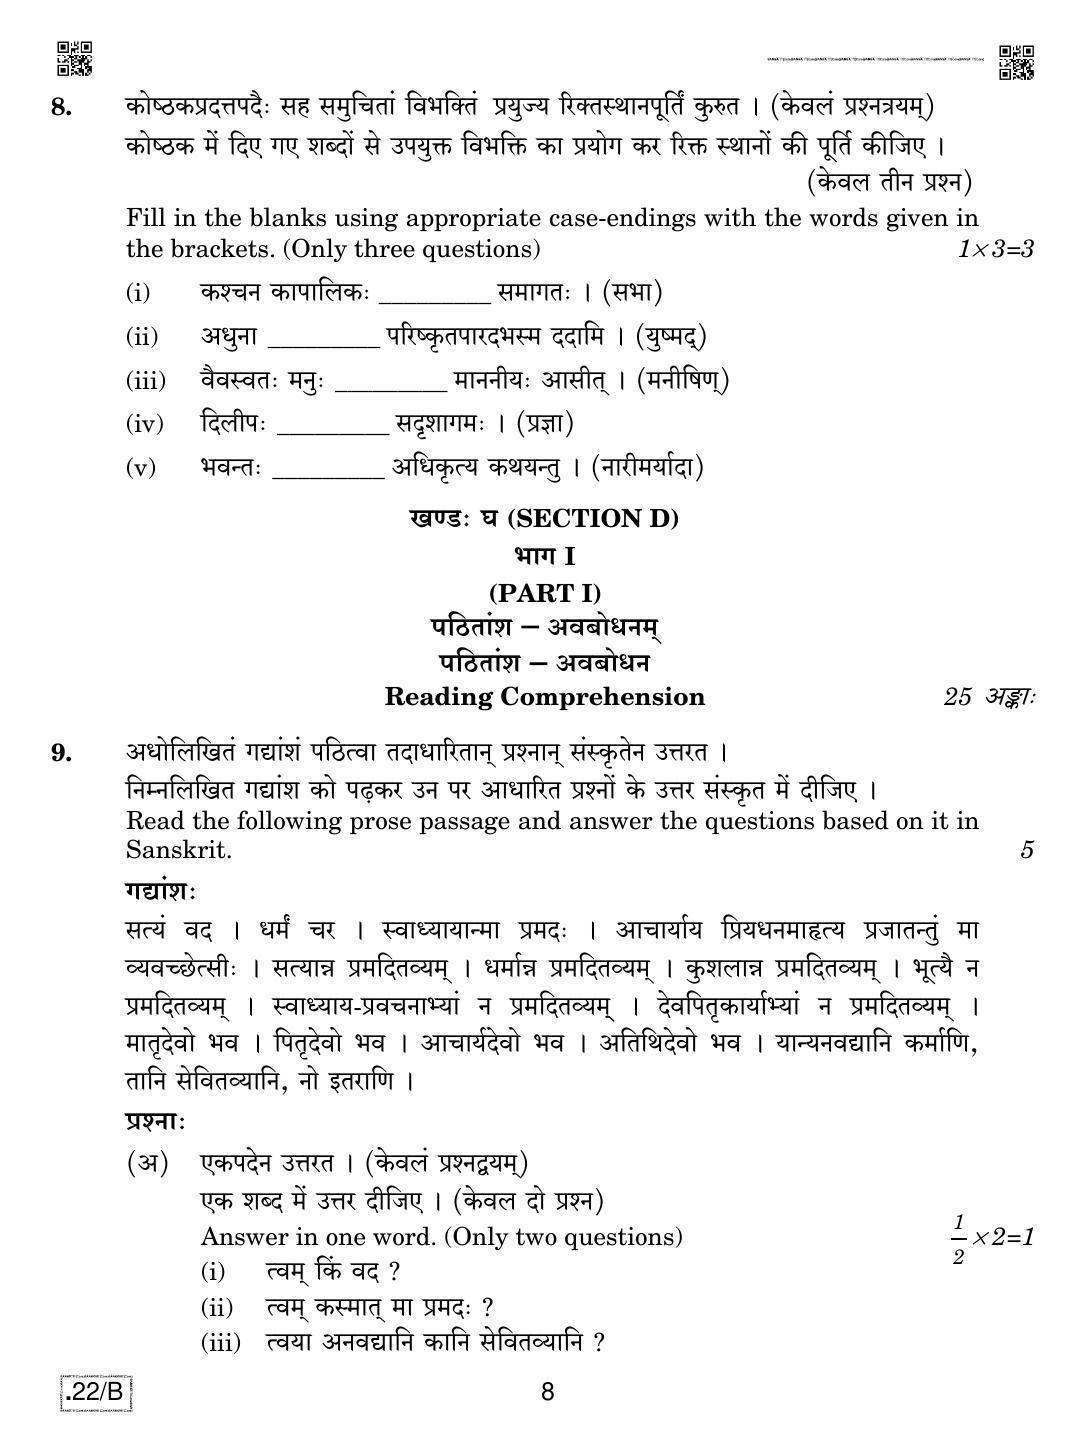 CBSE Class 12 Sanskrit Core 2020 Compartment Question Paper - Page 8